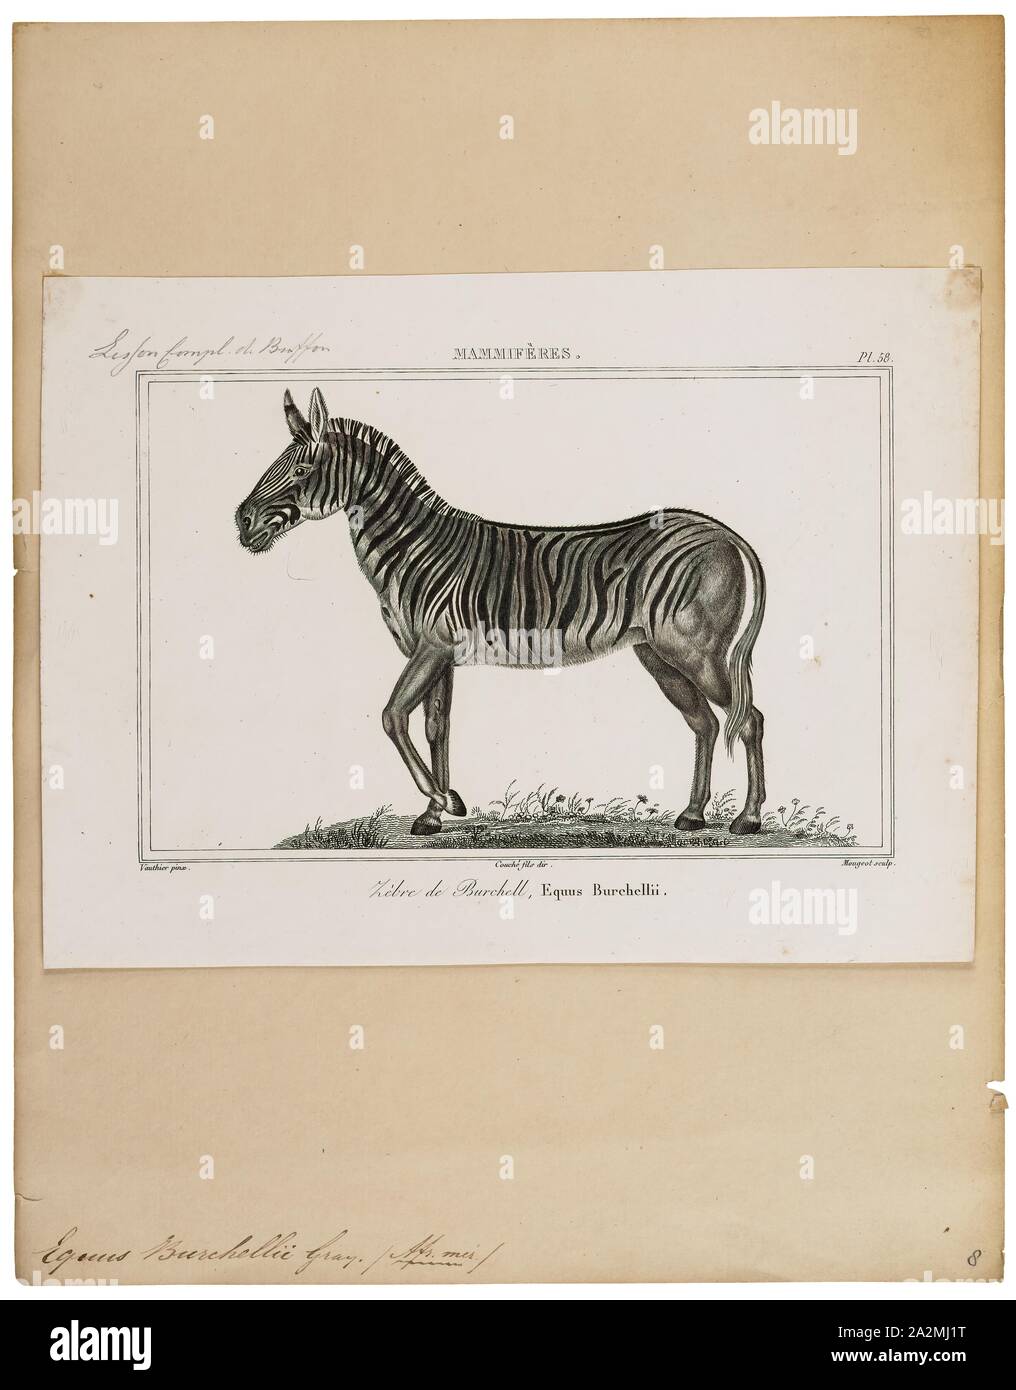 Equus burchellii, Drucken, Burchell's Zebra (Equus quagga burchellii) ist eine Unterart der Plains Zebra. Es ist benannt nach dem britischen Entdecker und Naturforscher William John burchell. Gemeinsamen Namen gehören die bontequagga, Damaraland, und Zululand zebra Zebra (Gray, 1824). Burchell's Zebra ist die einzige Unterart von Zebra, die rechtlich für den menschlichen Verzehr gezüchtet werden., 1700-1880 Stockfoto